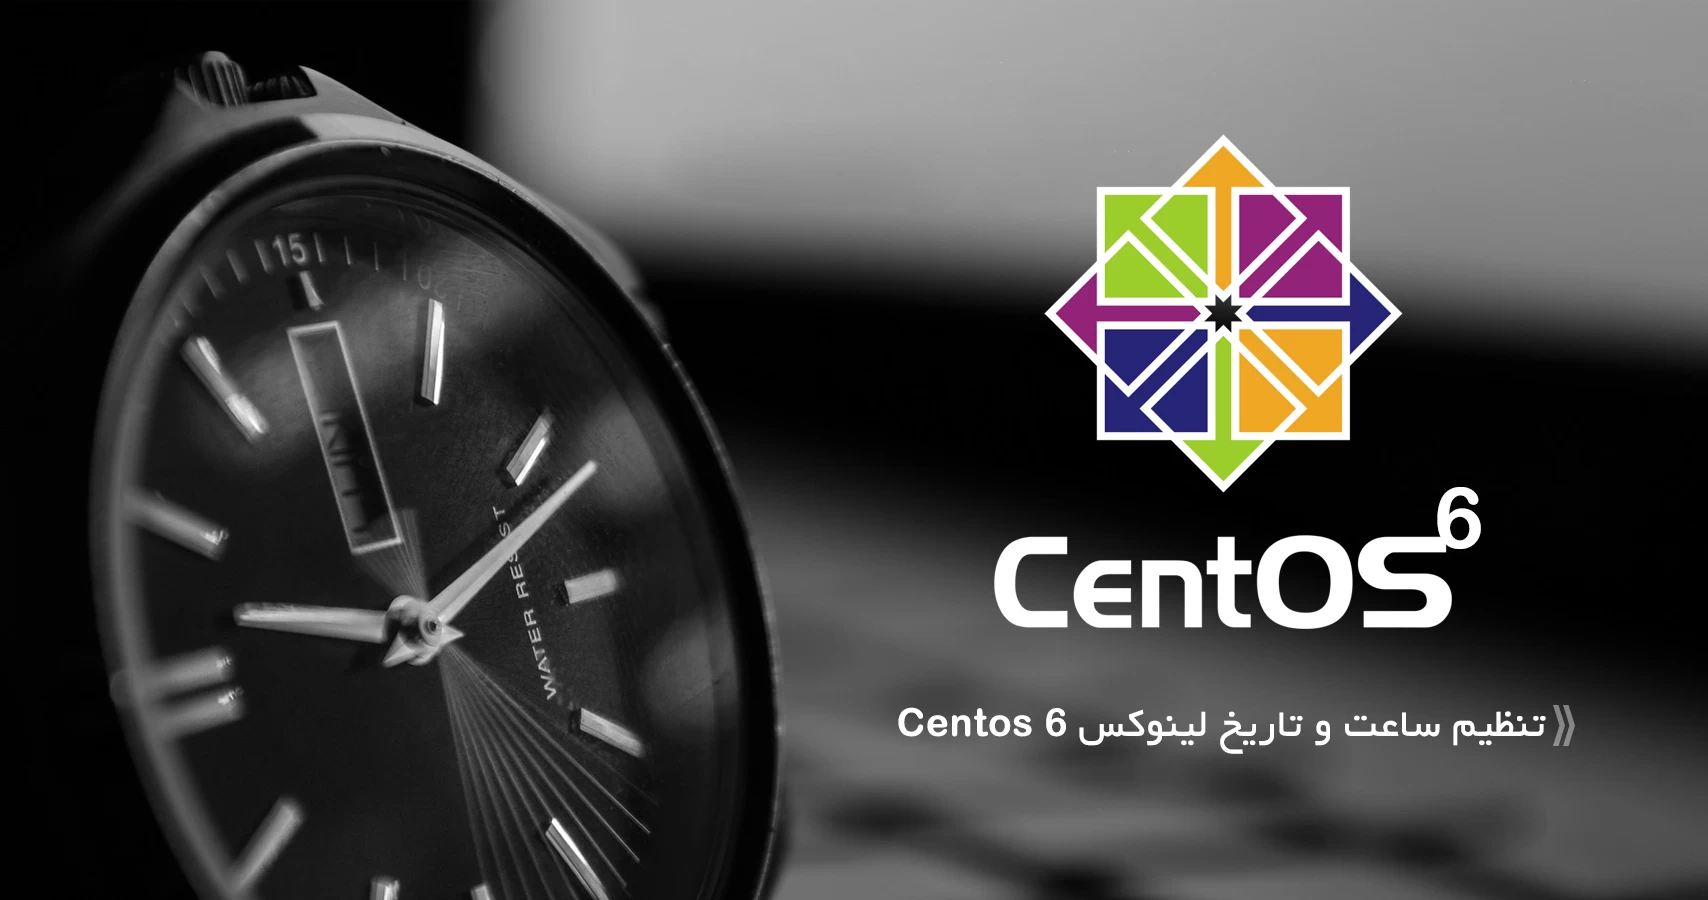 تنظیم ساعت و تاریخ لینوکس Centos 6